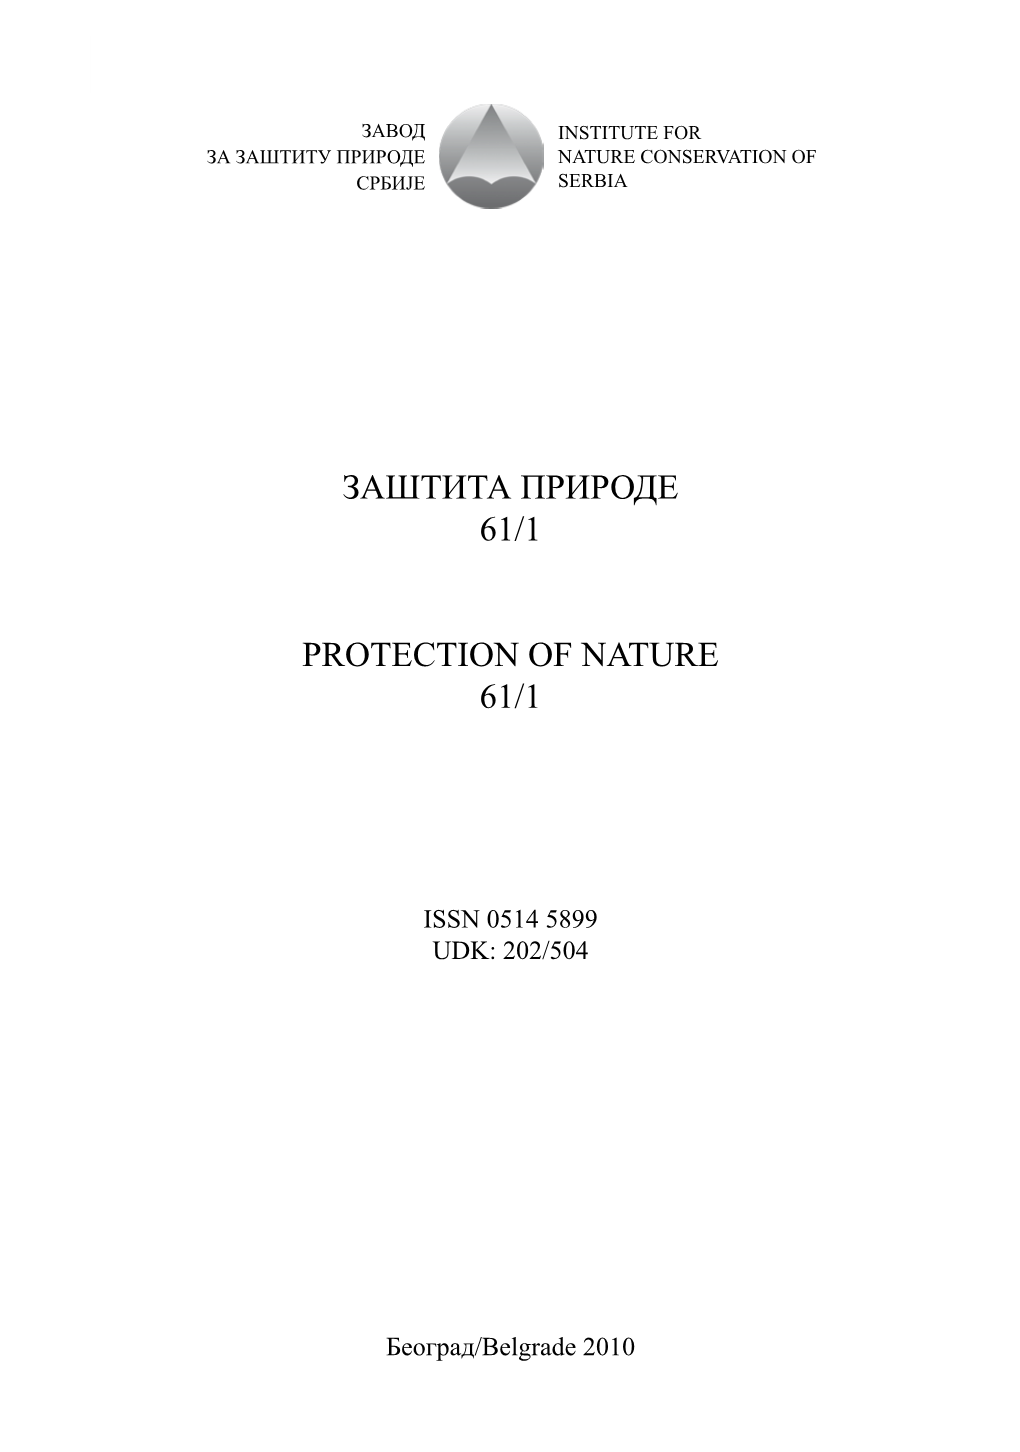 Заштита Природе 61/1 Protection of Nature 61/1